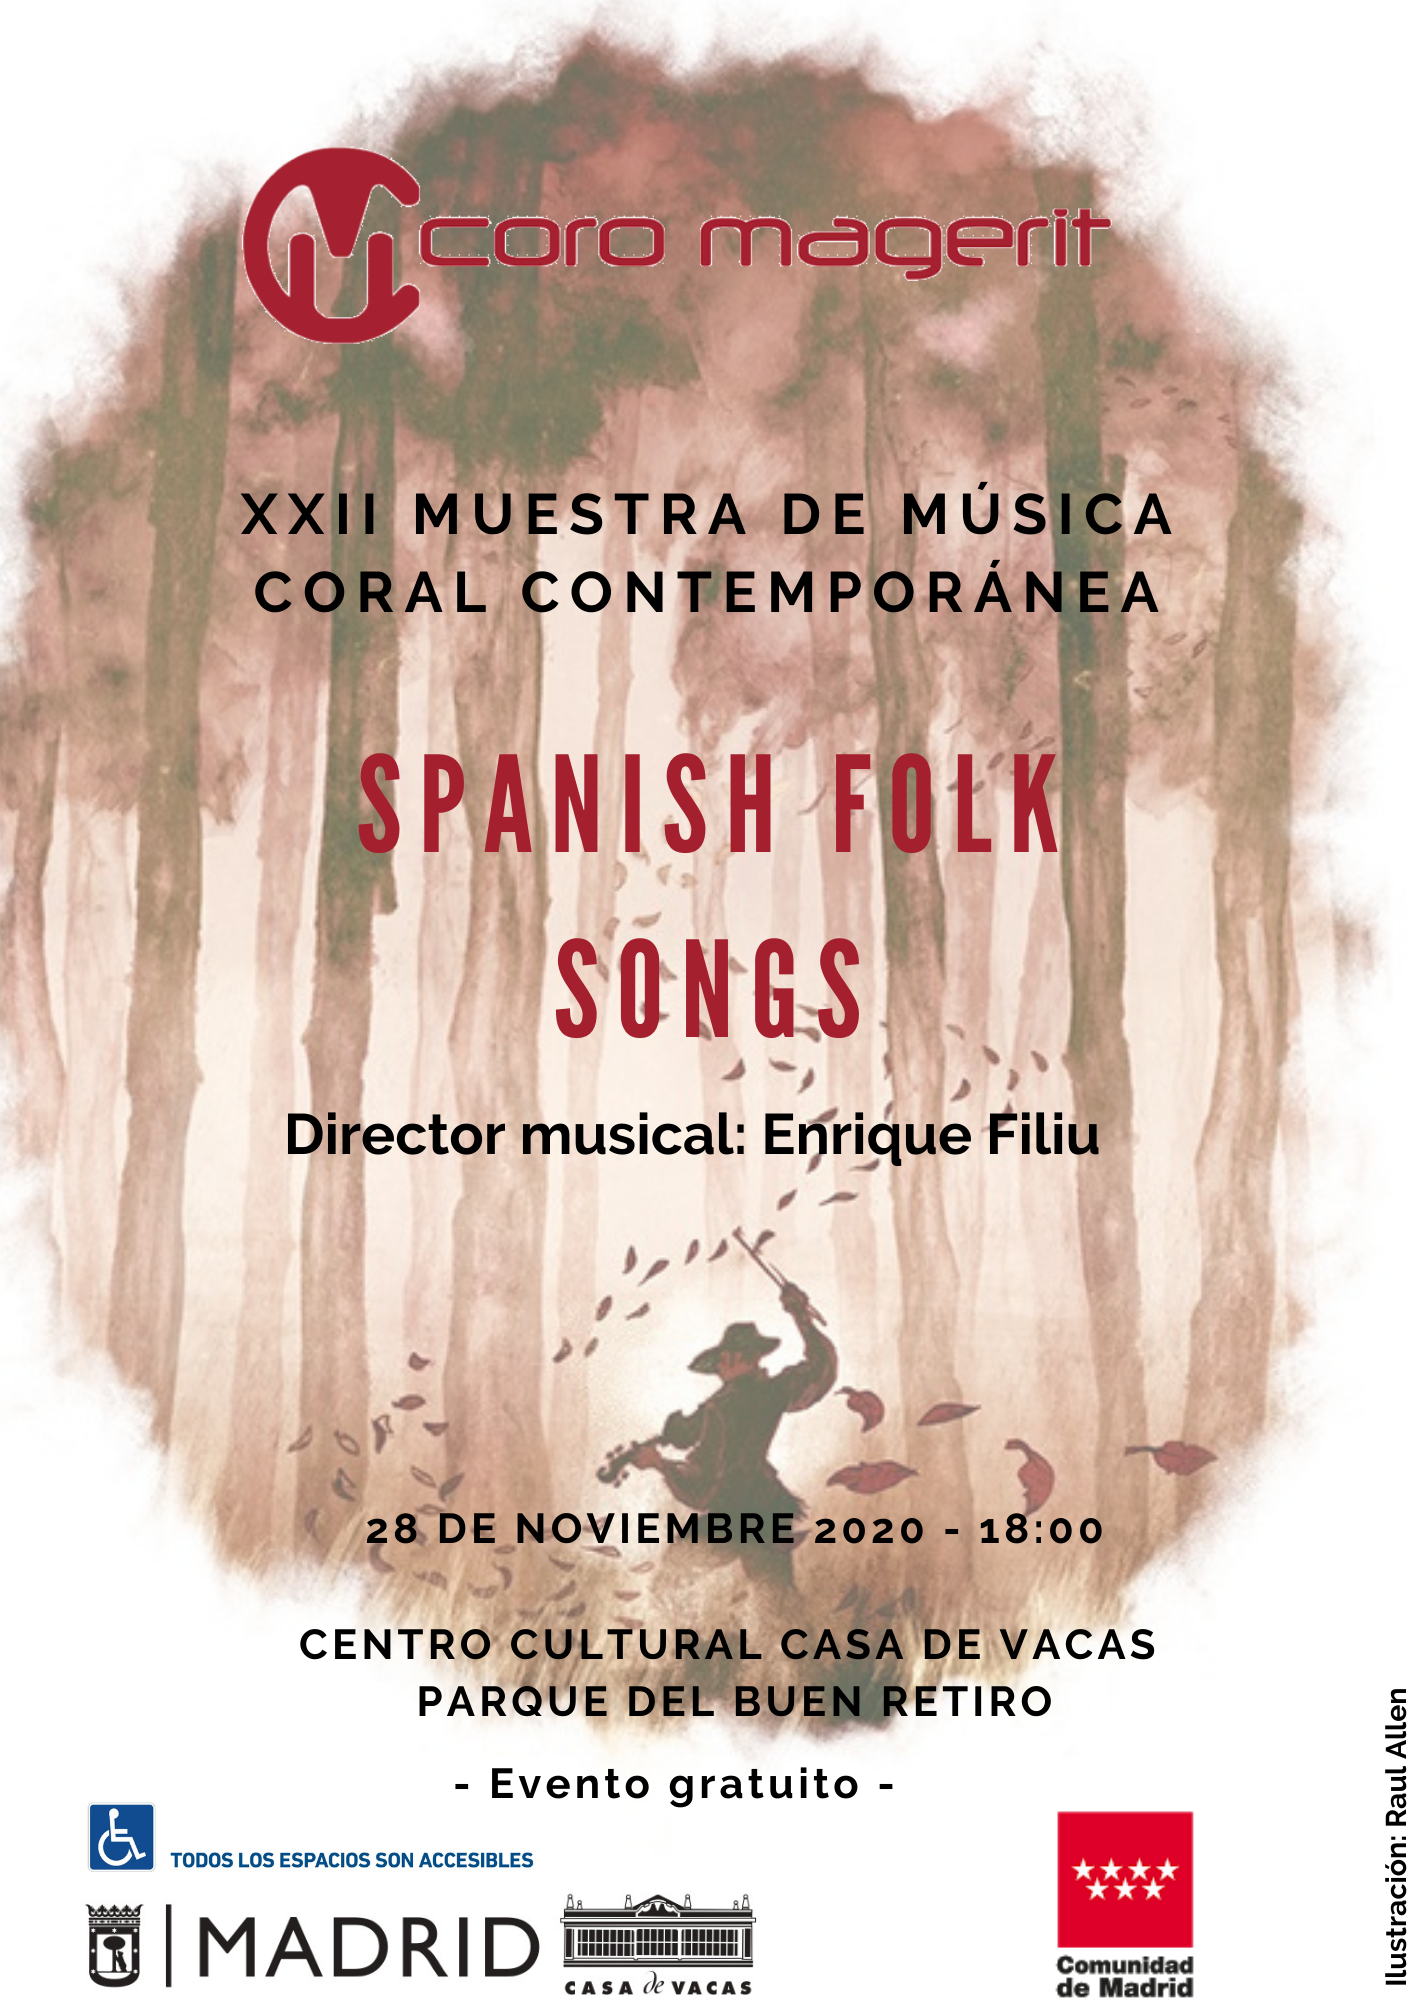 XXII Muestra de Música Coral Contemporánea